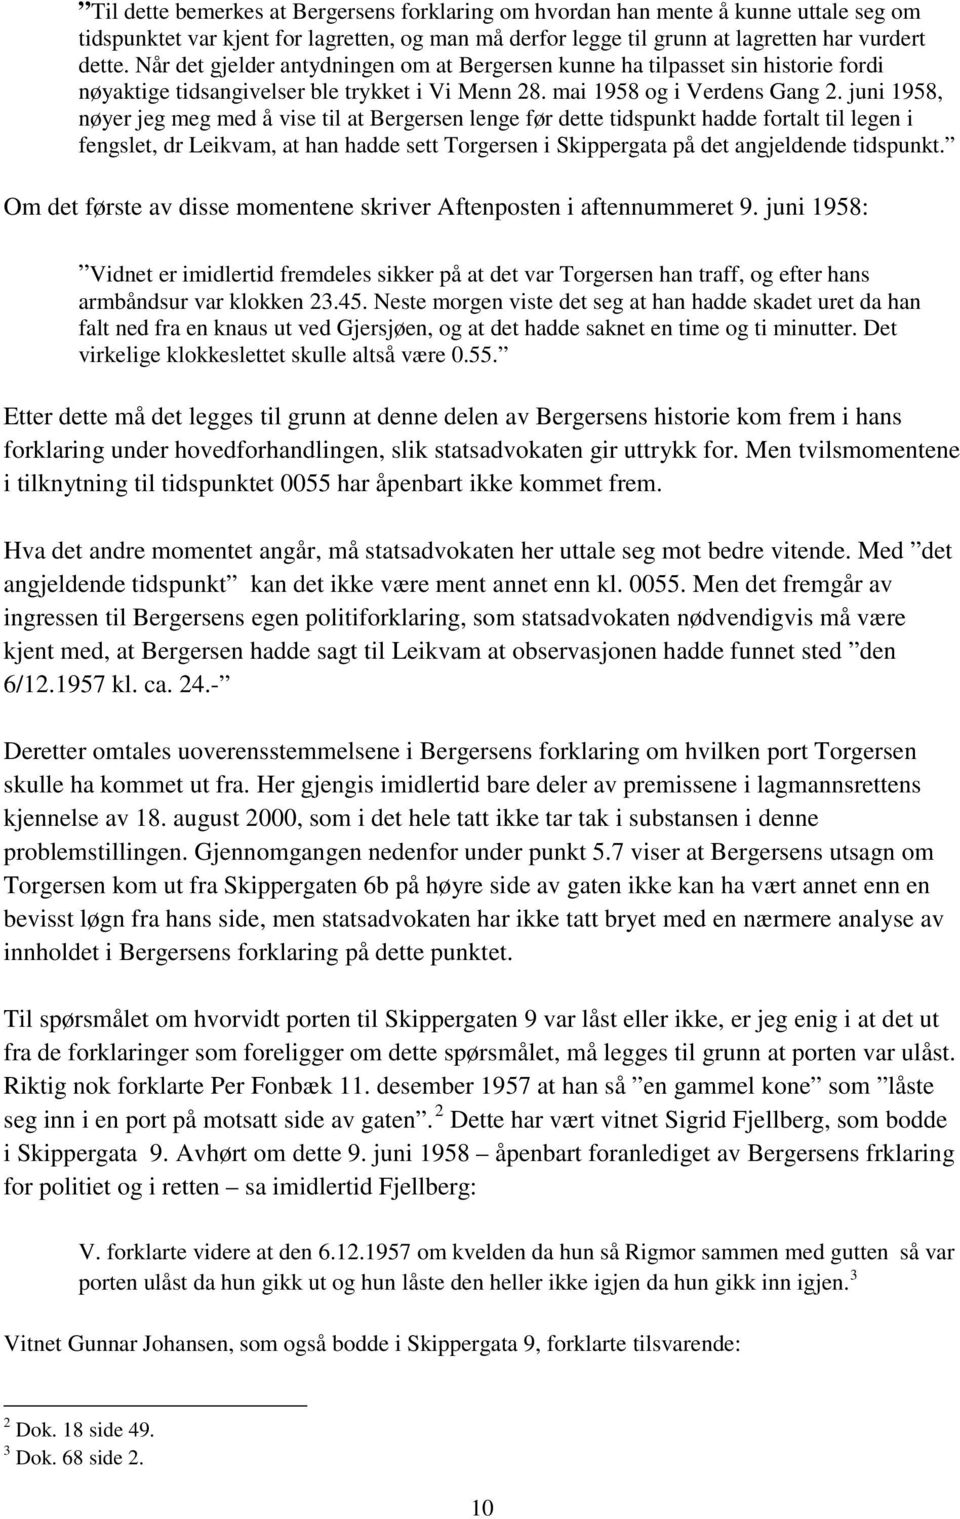 juni 1958, nøyer jeg meg med å vise til at Bergersen lenge før dette tidspunkt hadde fortalt til legen i fengslet, dr Leikvam, at han hadde sett Torgersen i Skippergata på det angjeldende tidspunkt.